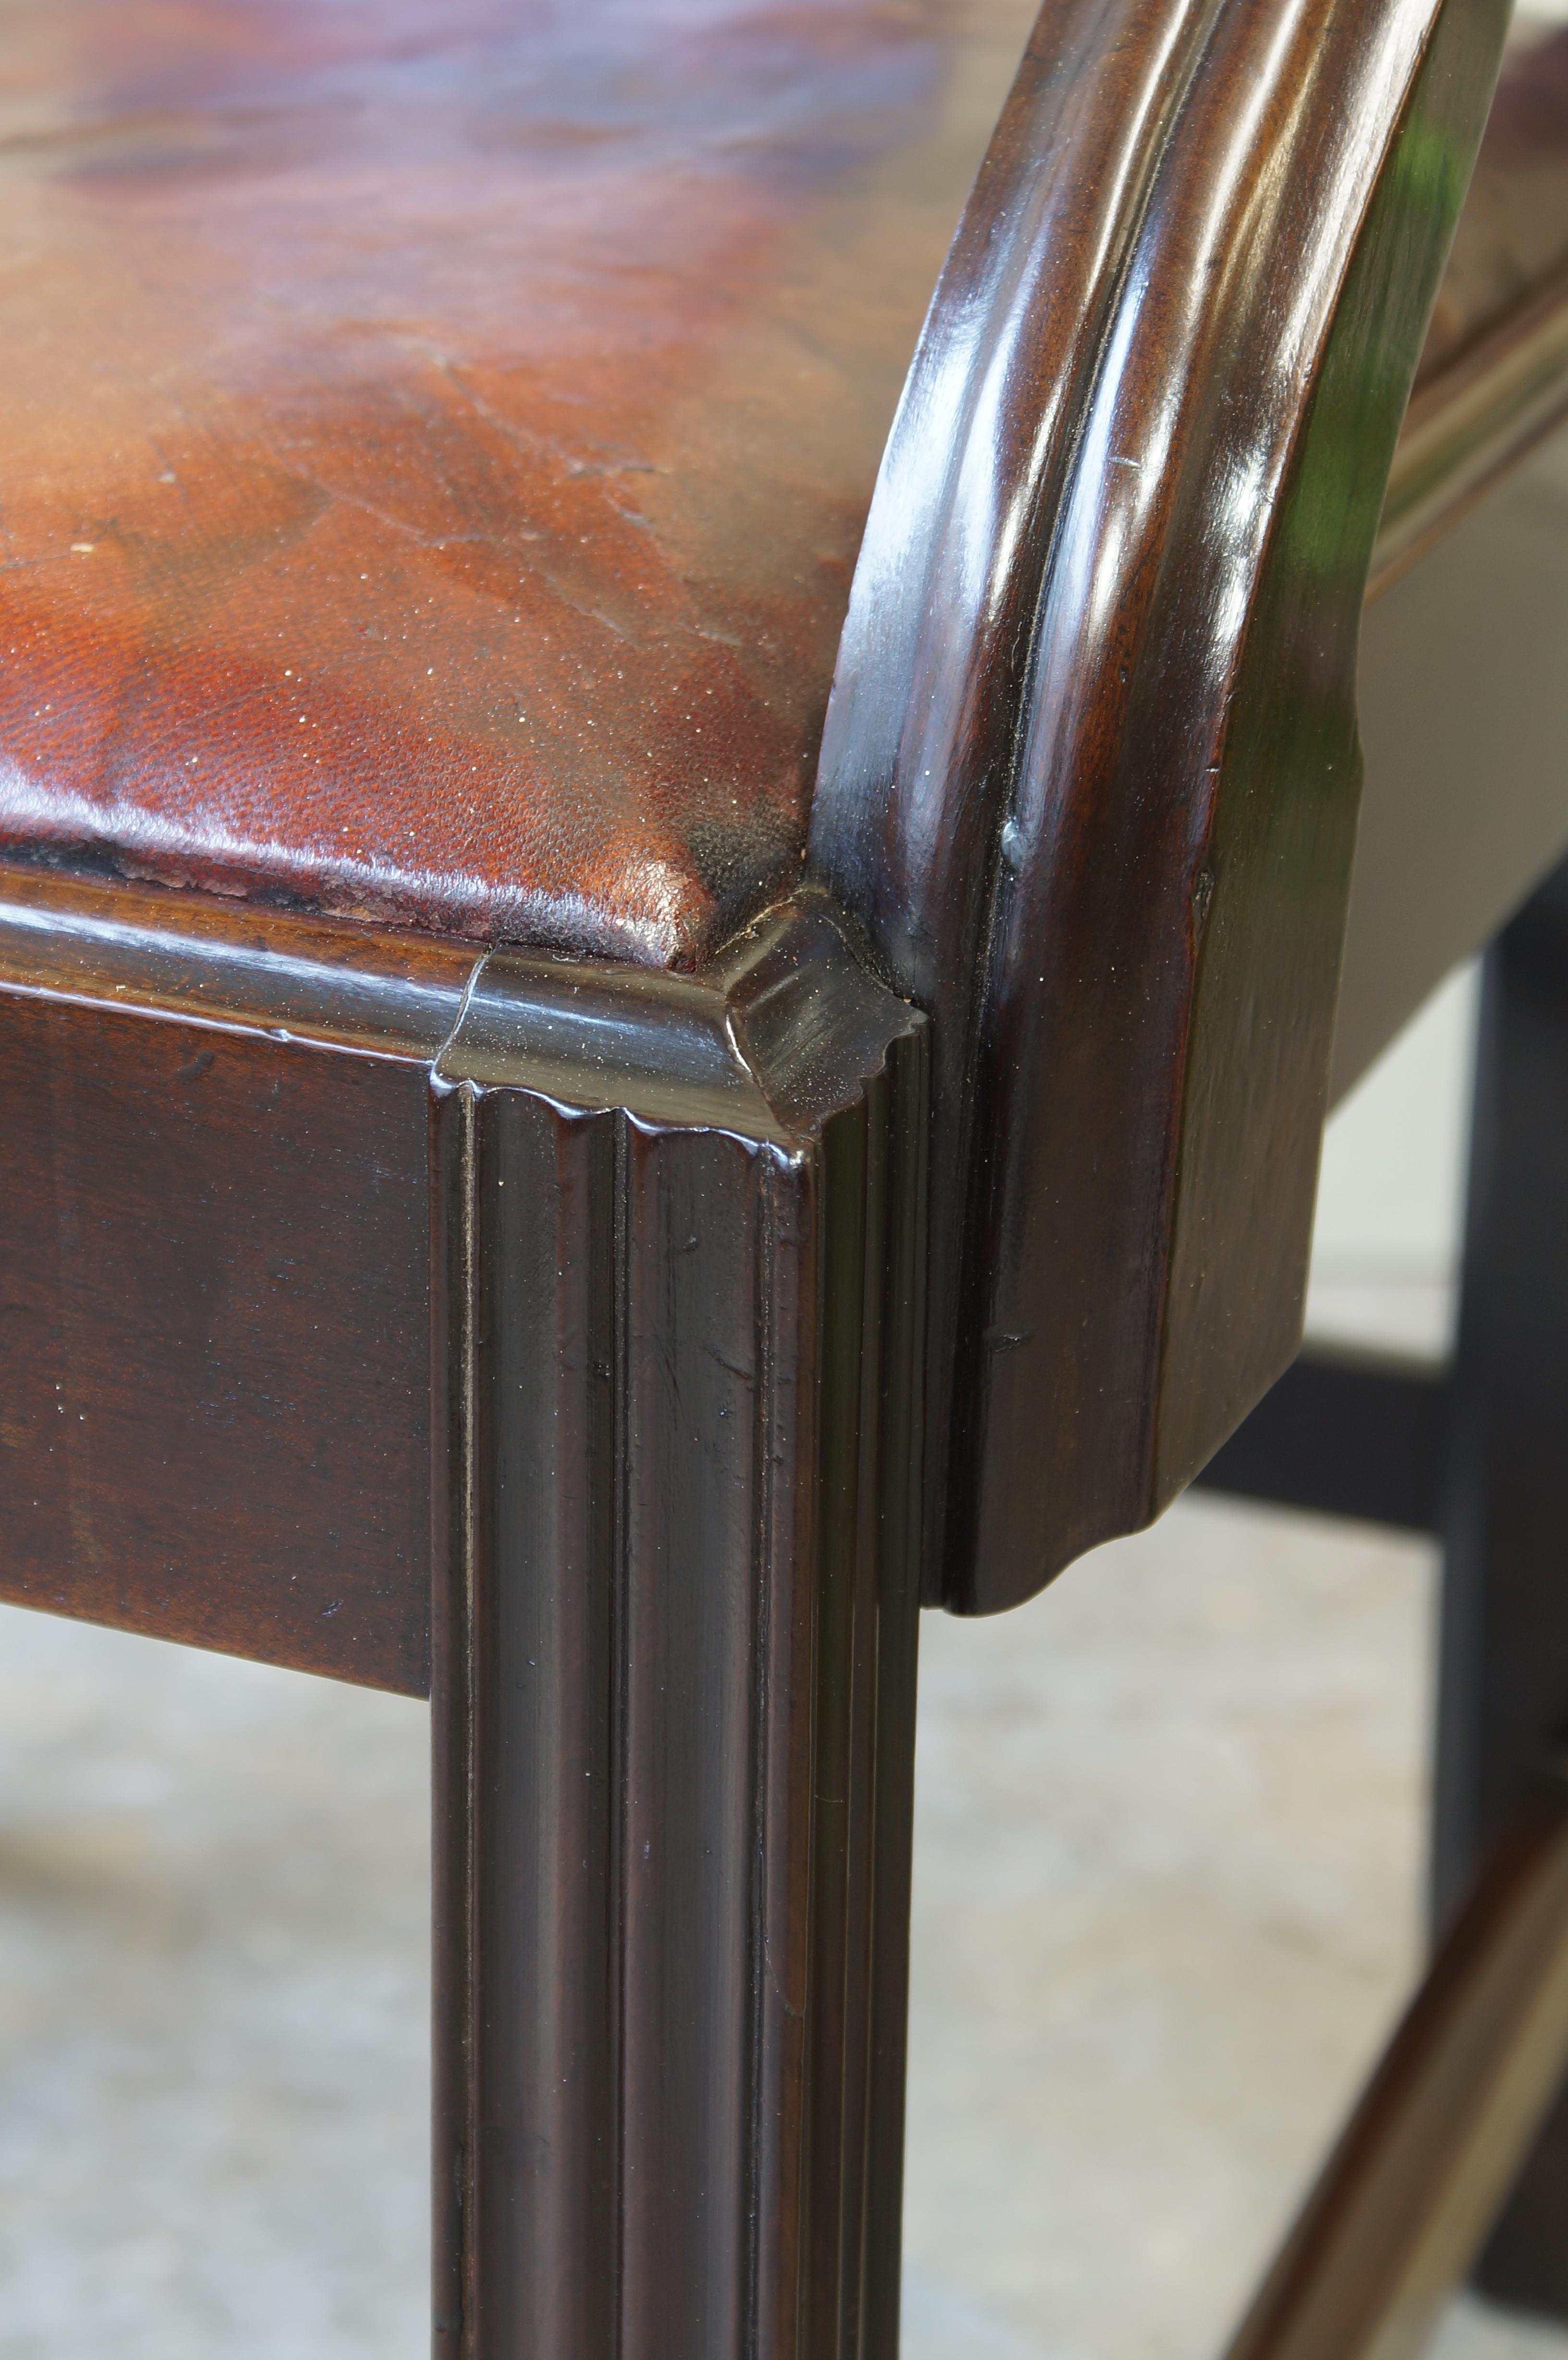 Un beau et rare fauteuil en bois de laurier de George III, de grandes proportions et d'une bonne couleur et patine. Il est doté d'une traverse supérieure bien façonnée, d'un dosseret façonné et fretté et de bras bien façonnés qui s'intègrent